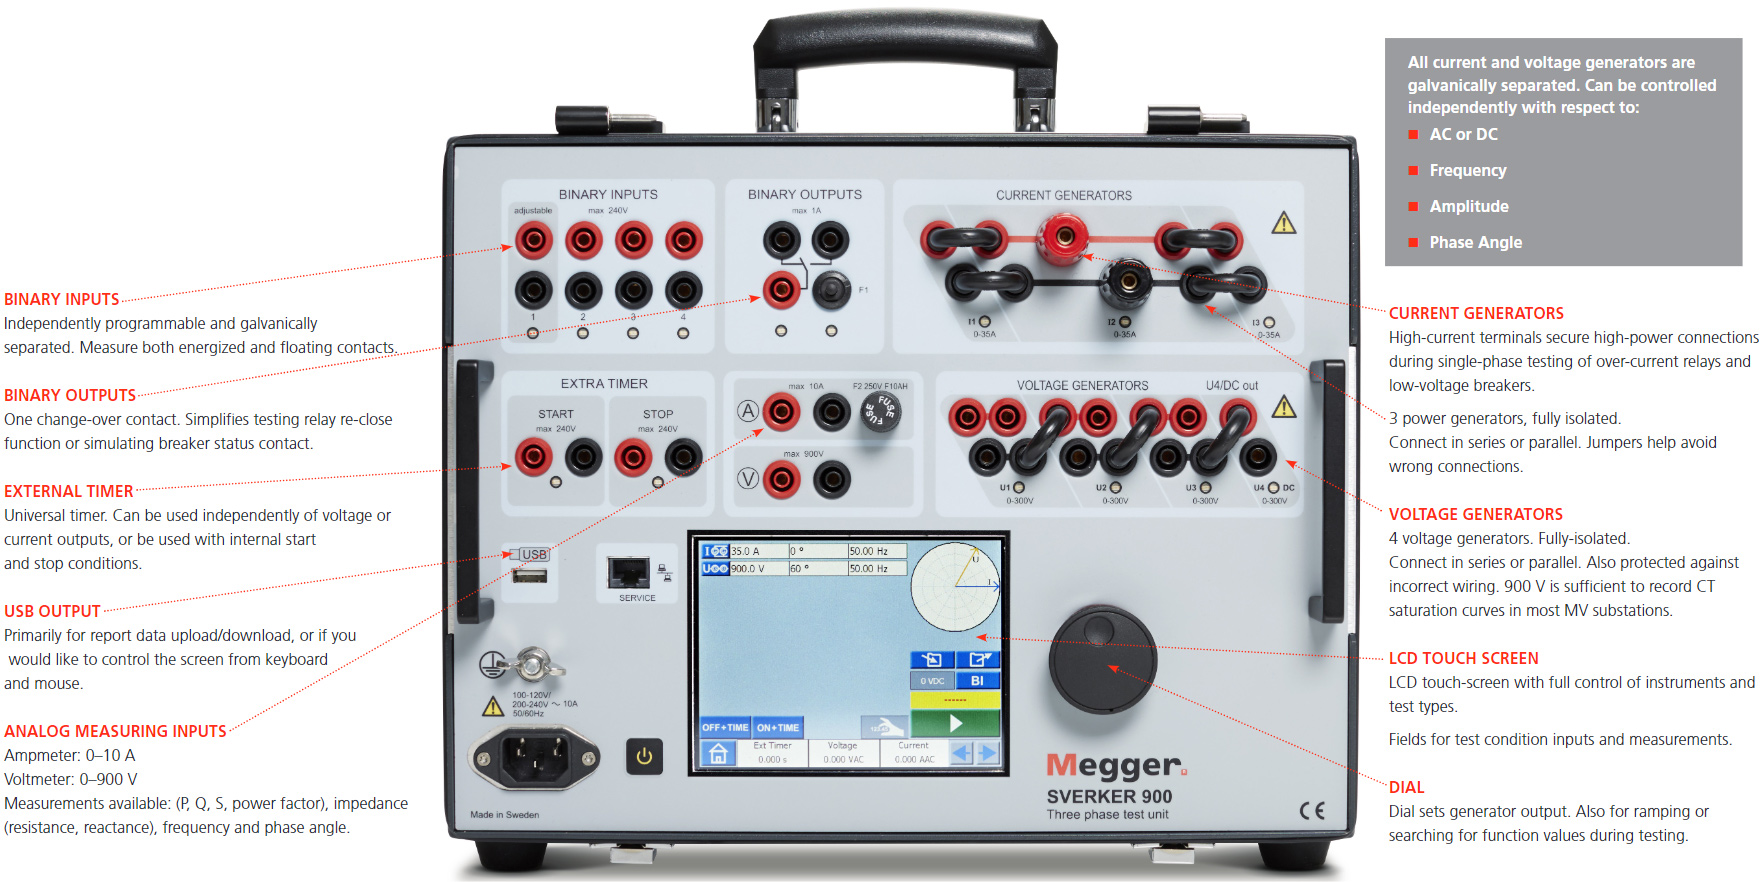 Megger CR-19000 SVERKER 900 Basic layout, explaining what each button/function.